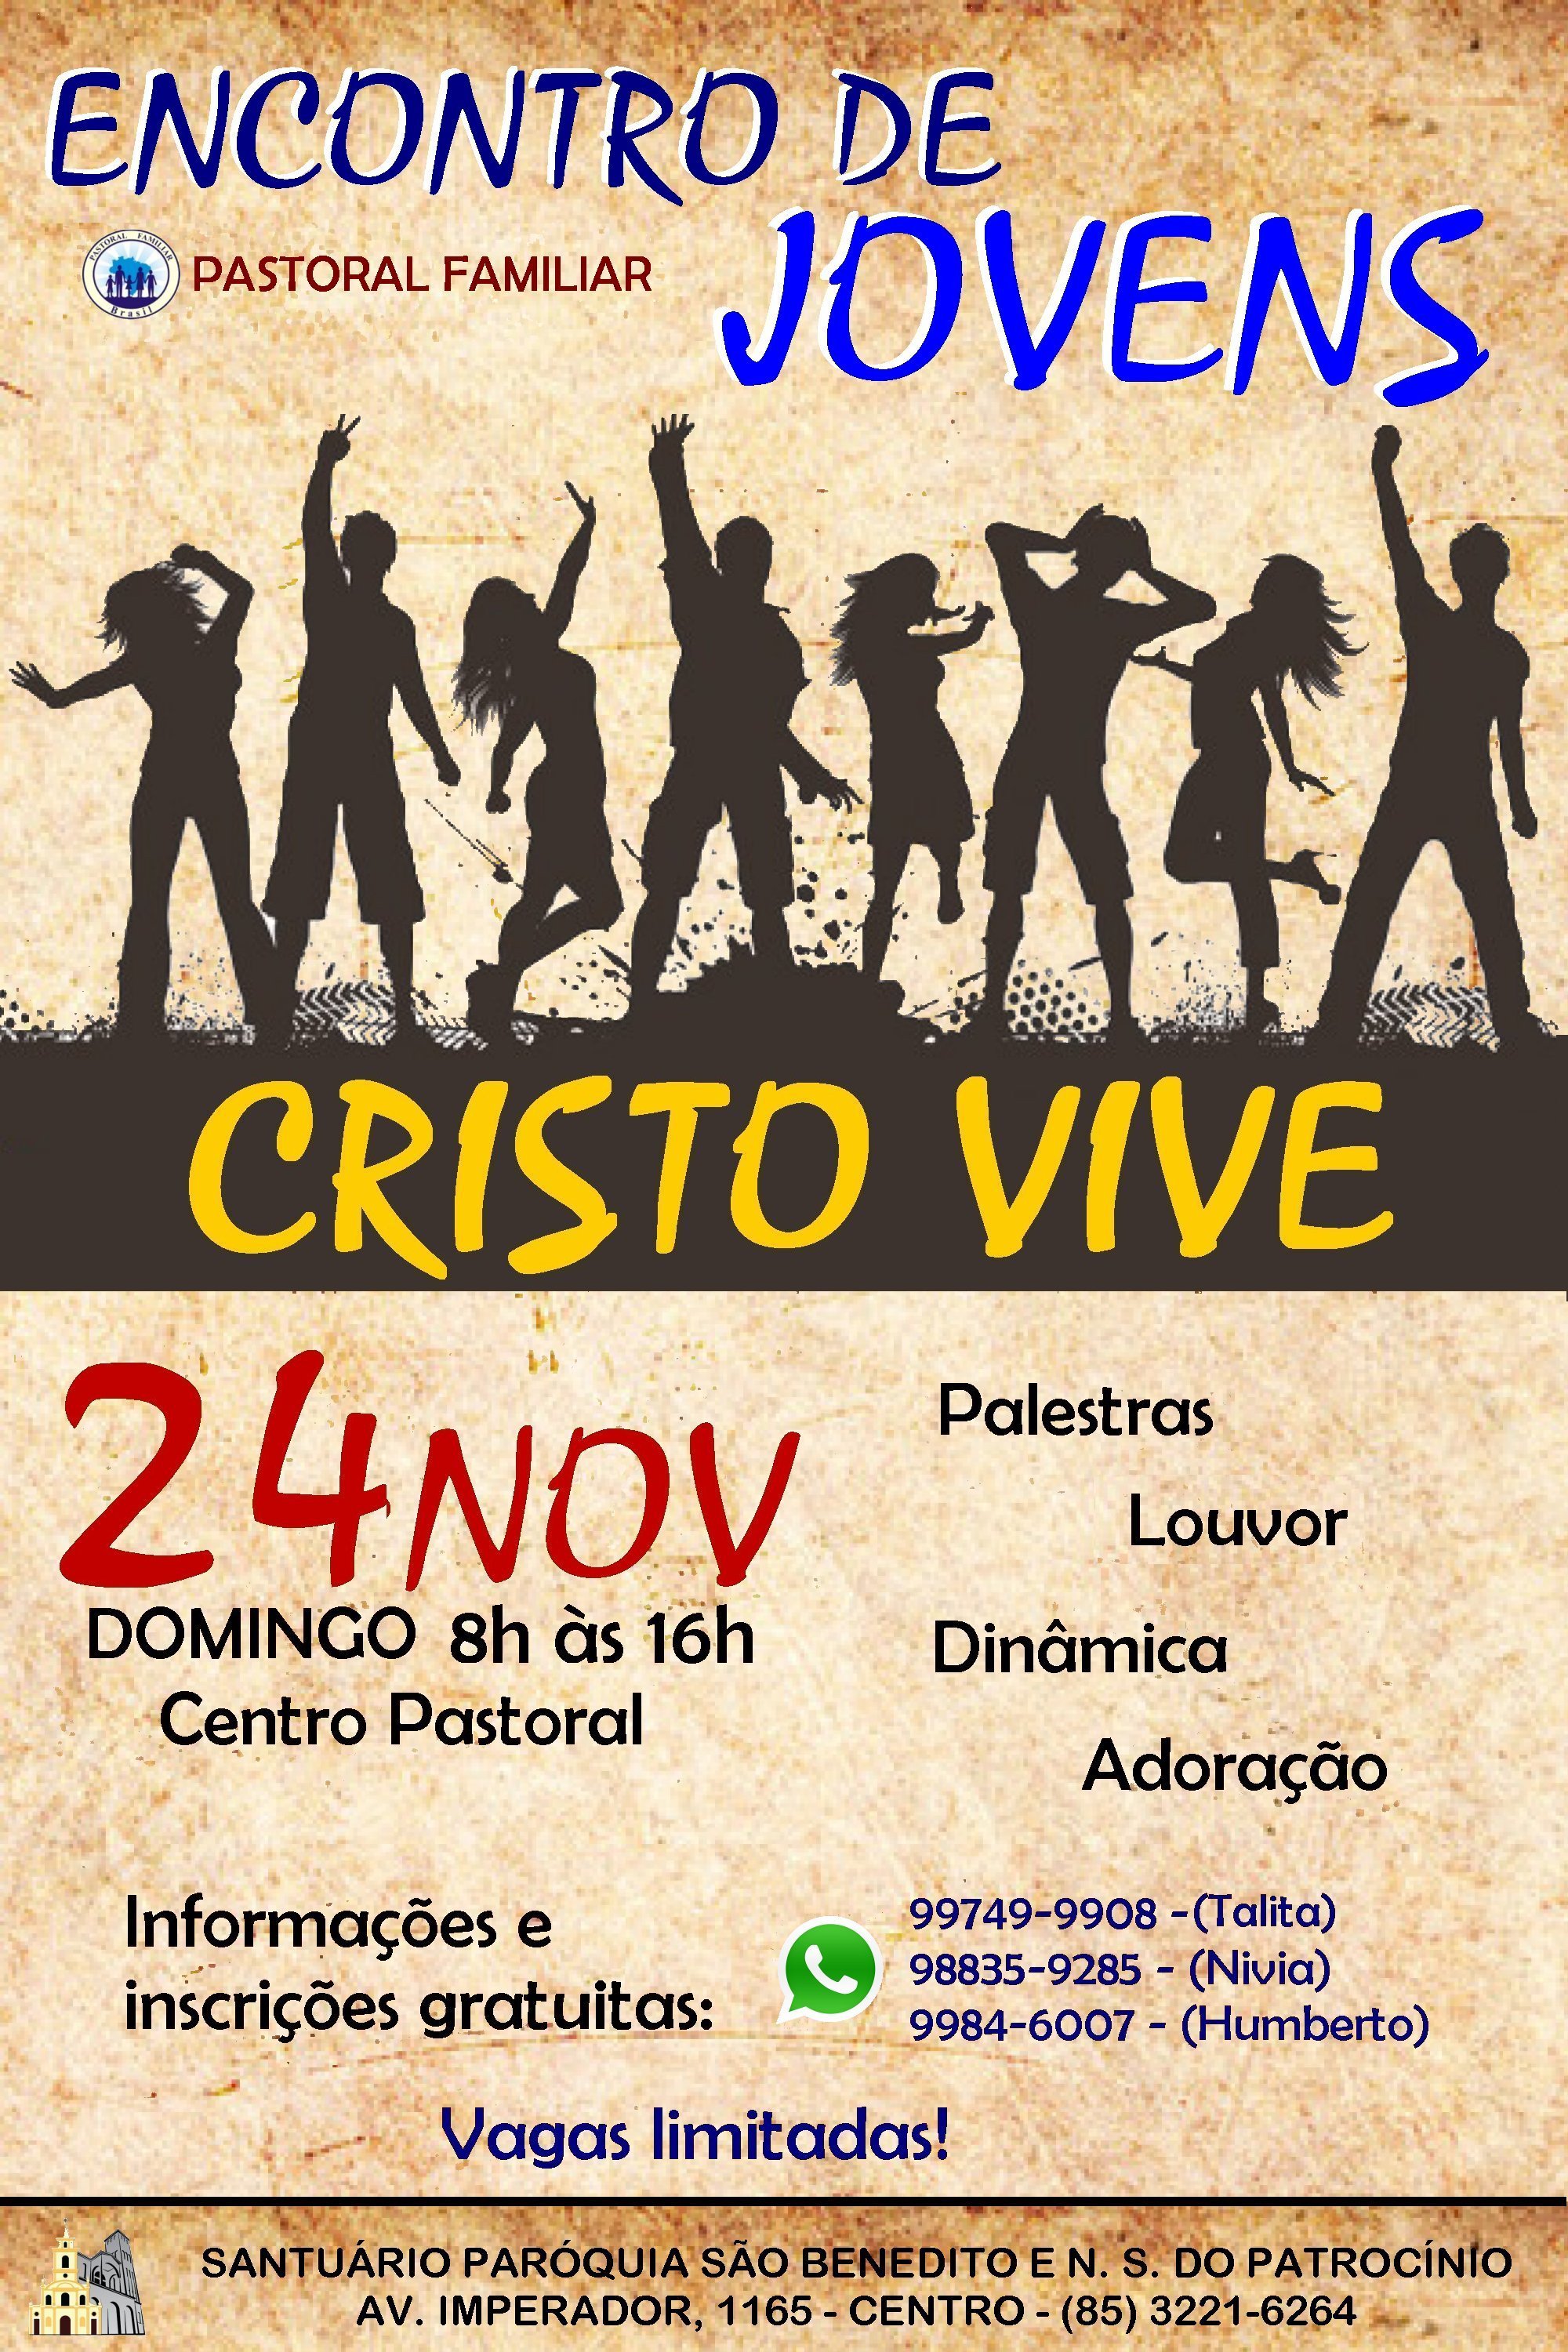 Encontro de Jovem “Cristo Vive” no dia 24/11 na Paróquia São Benedito. Participe!